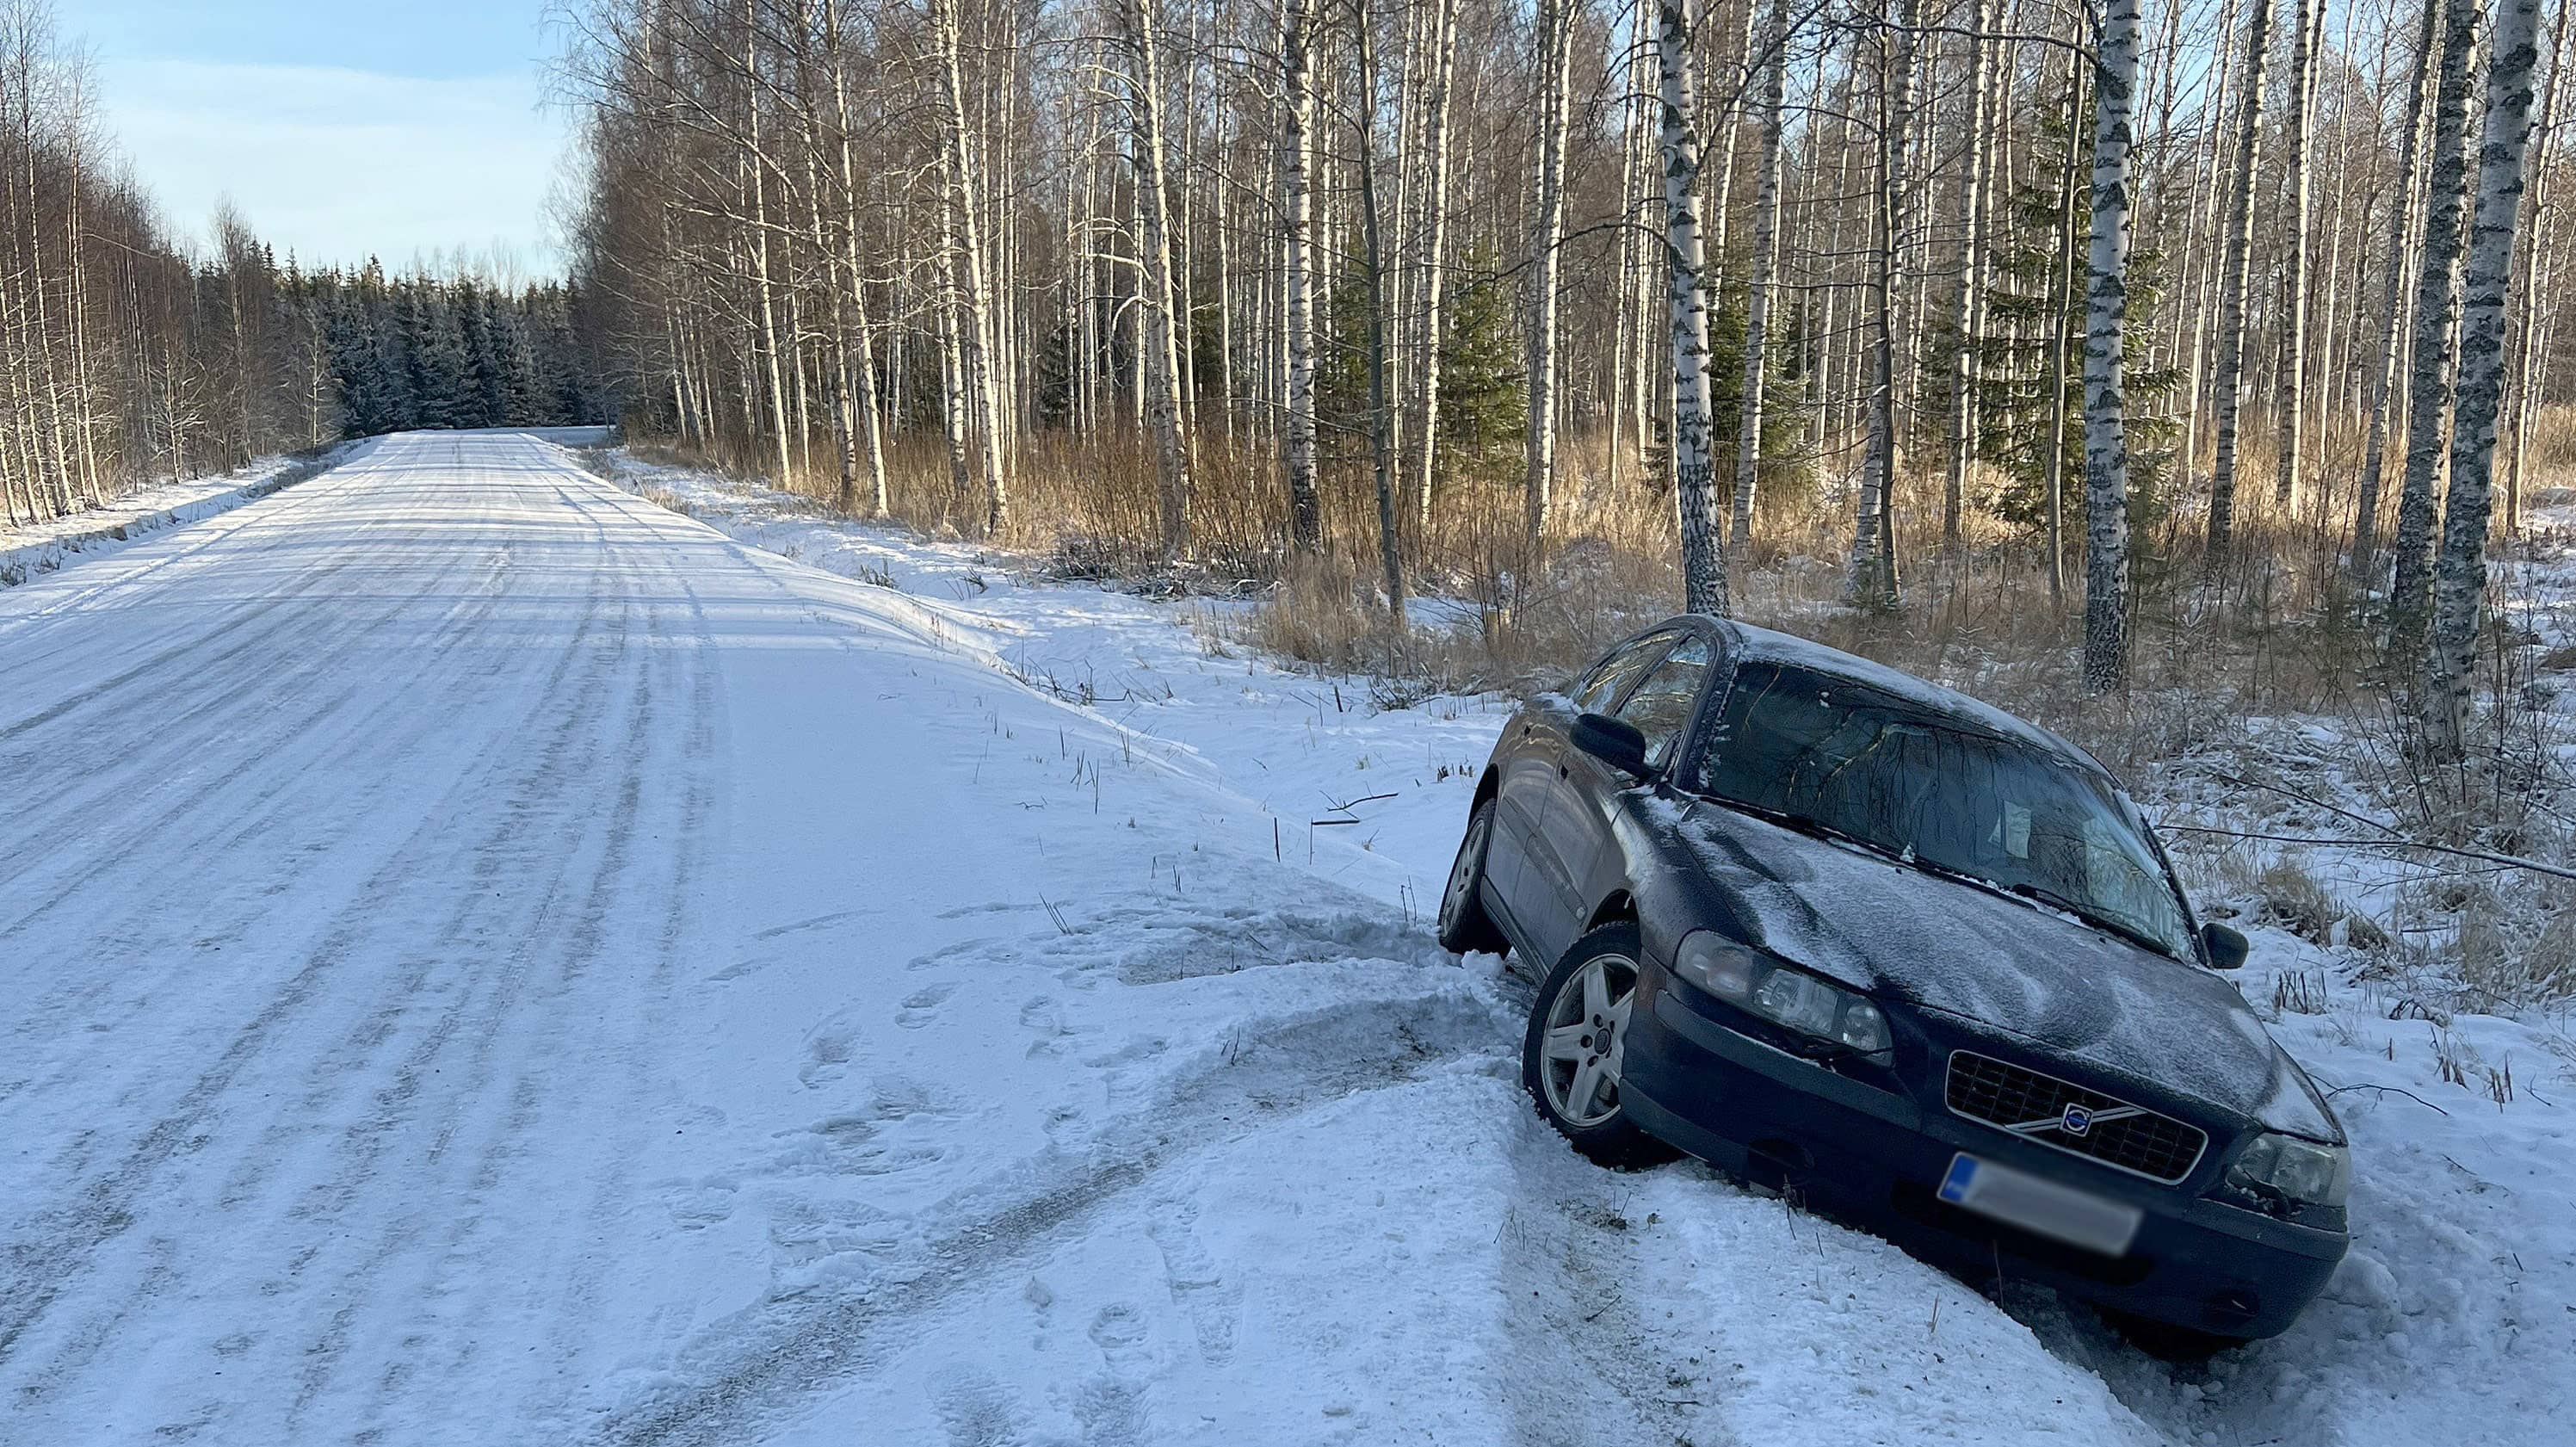 Tummansininen Volvo oikealla puolella tietä ojassa talvella, auton nokka on kohti kameraa, tien ympärillä koivikkoa.